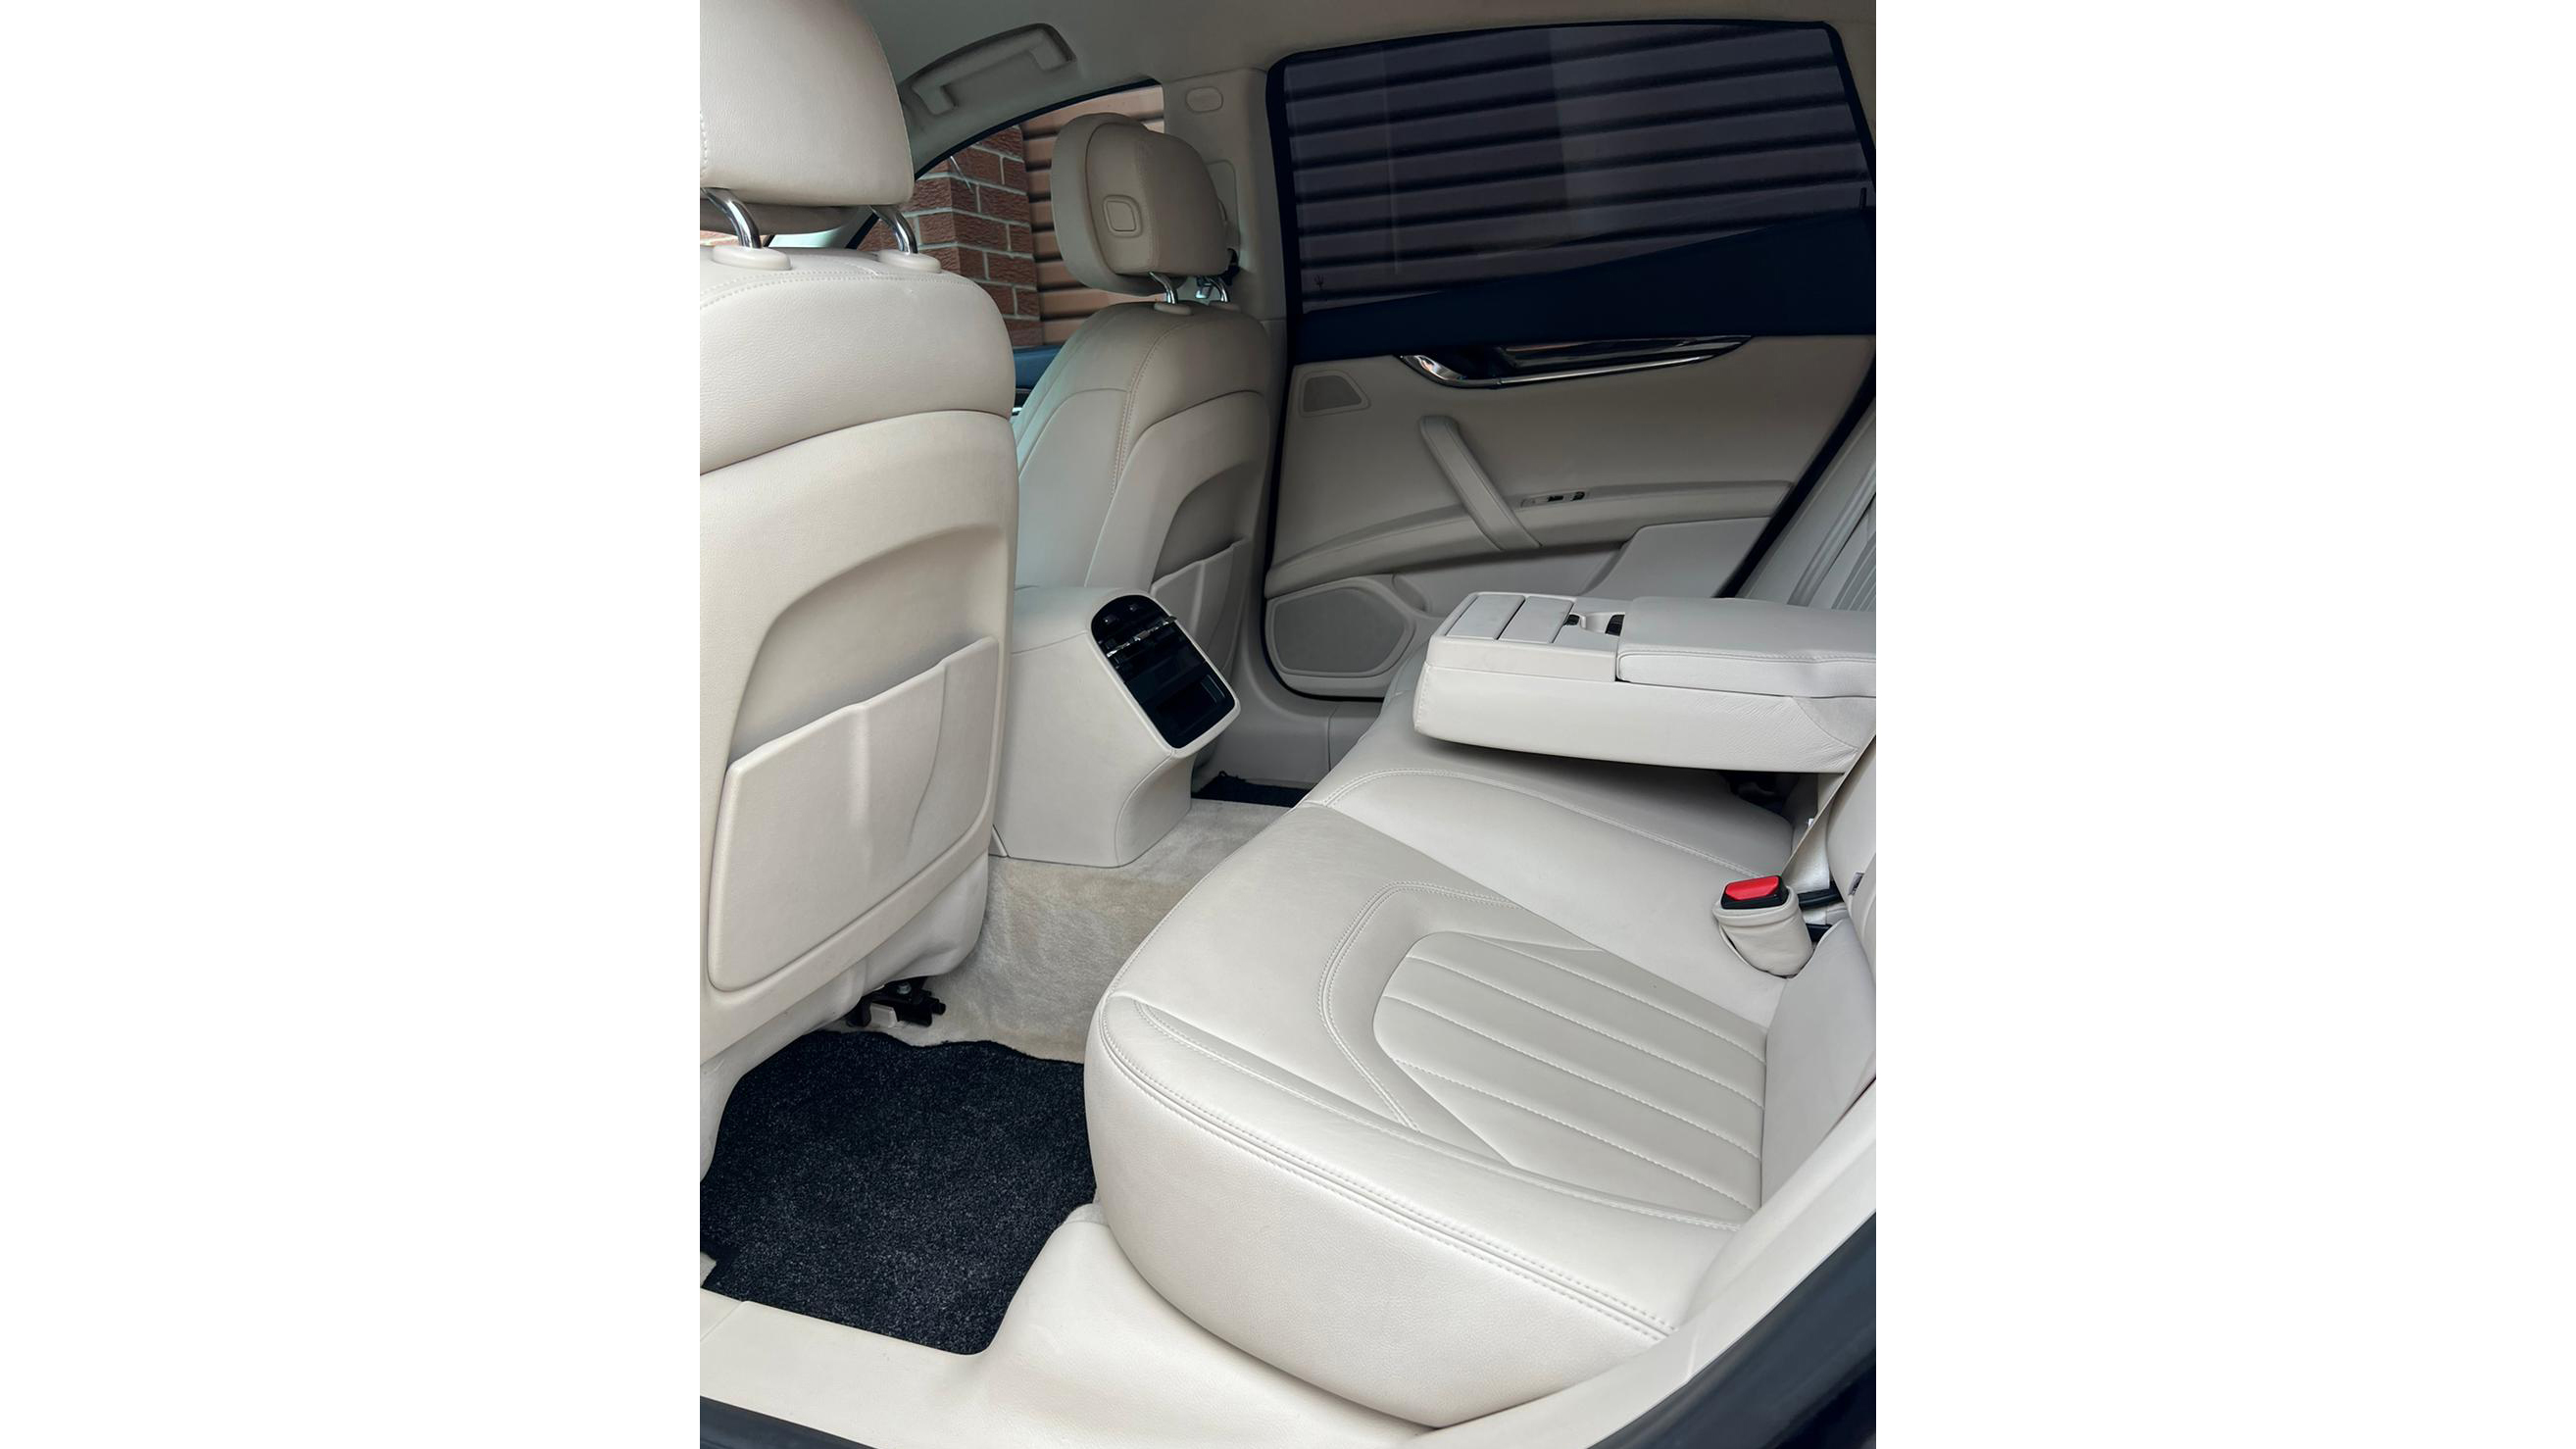 cream leather interior rear seating area in white maserati